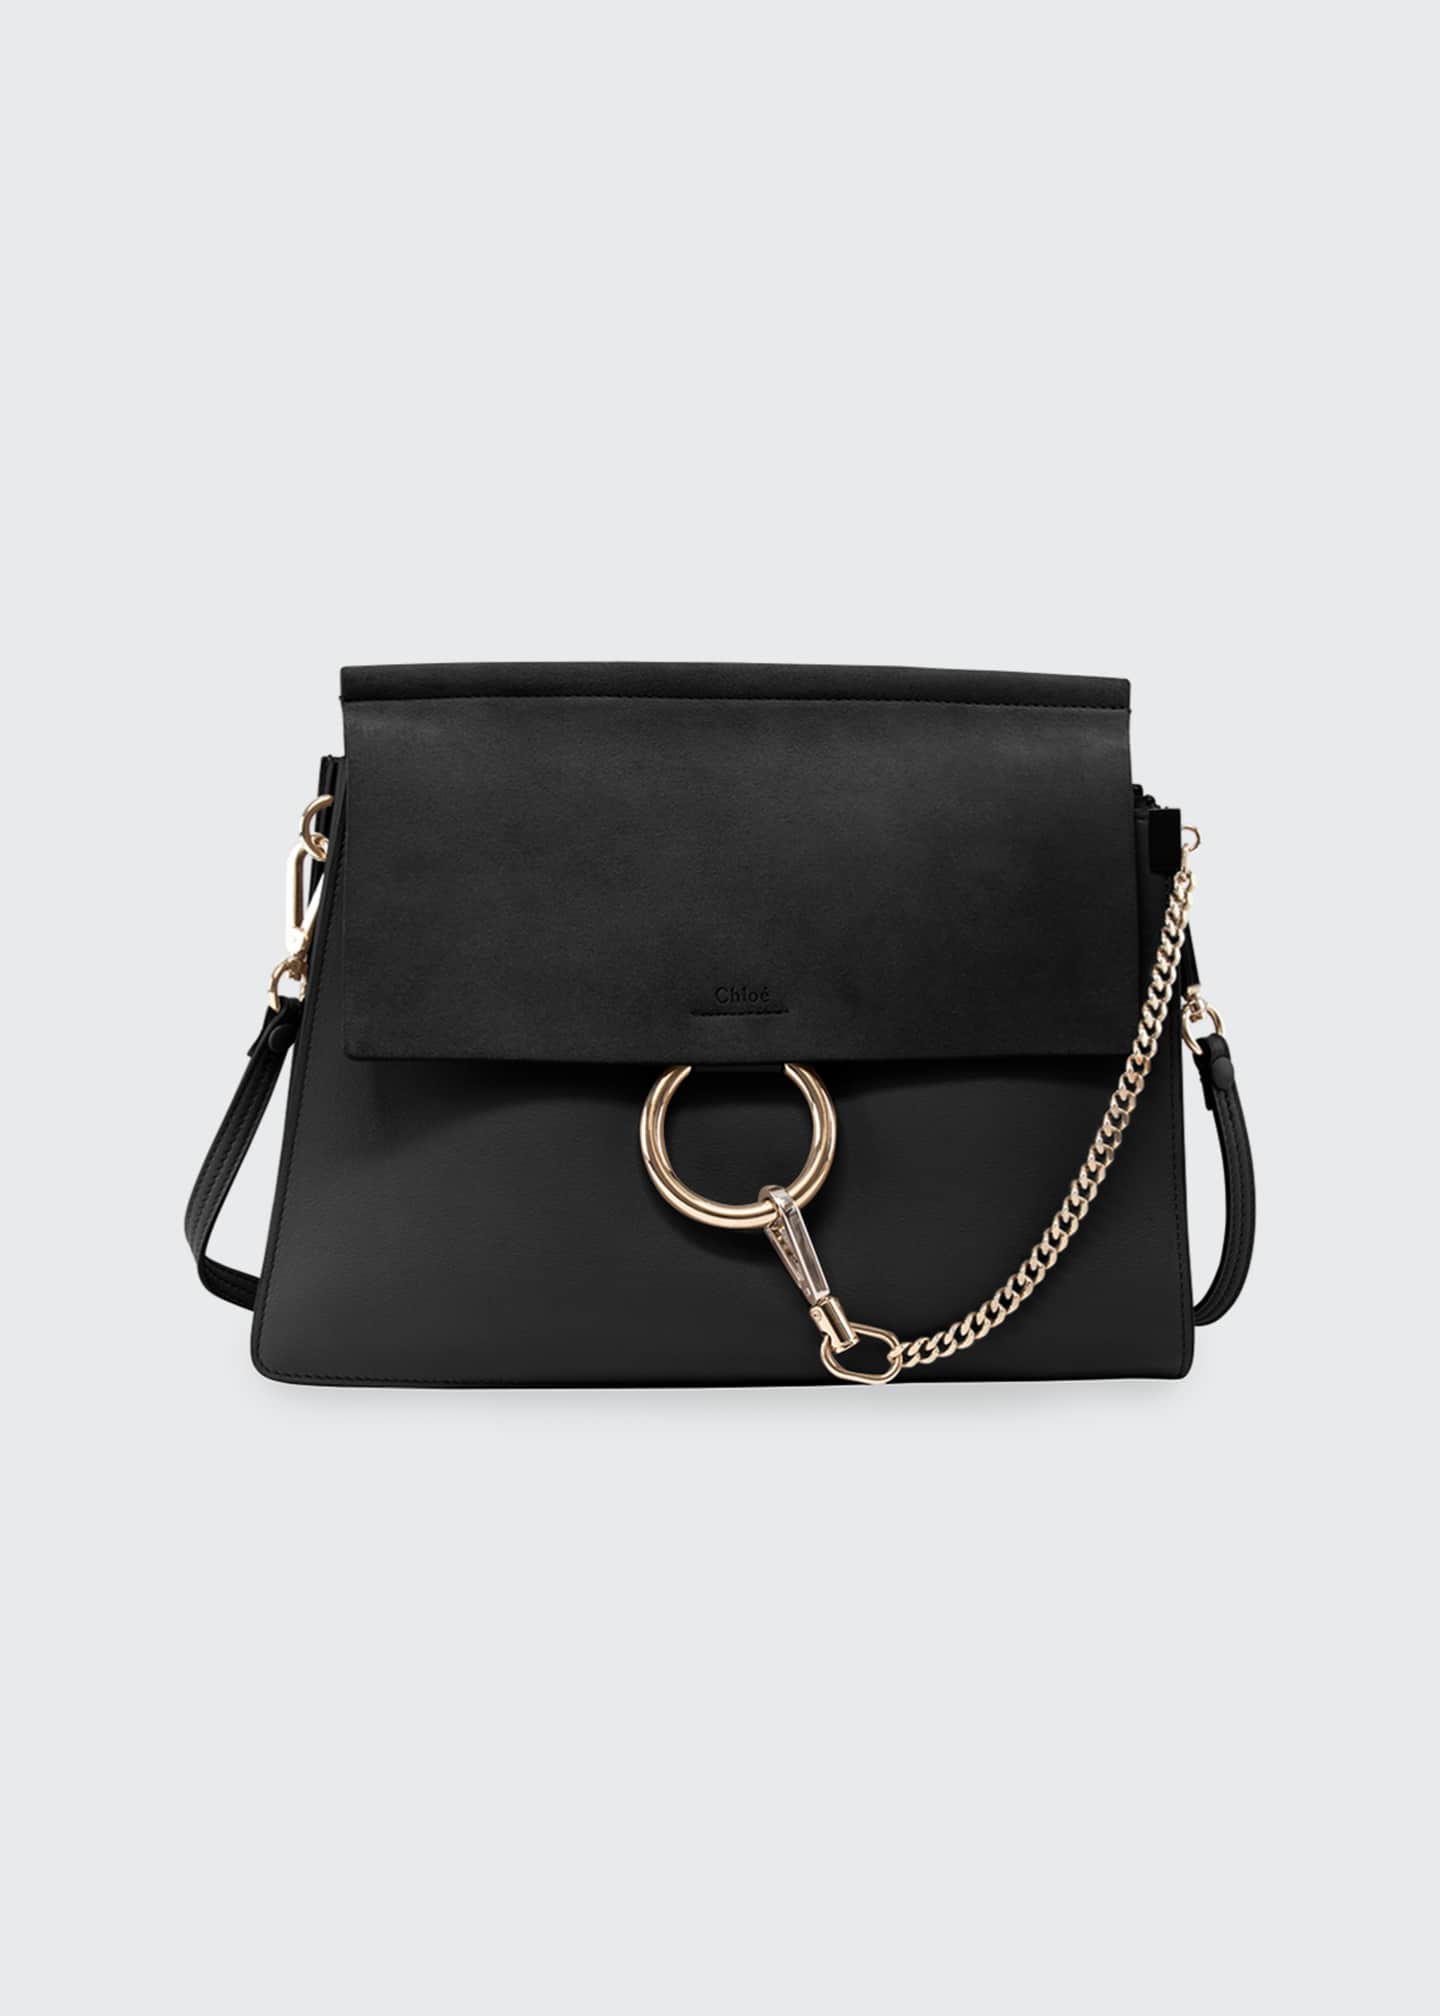 Valentino Handbags : Clutch & Shoulder Bags at Bergdorf Goodman